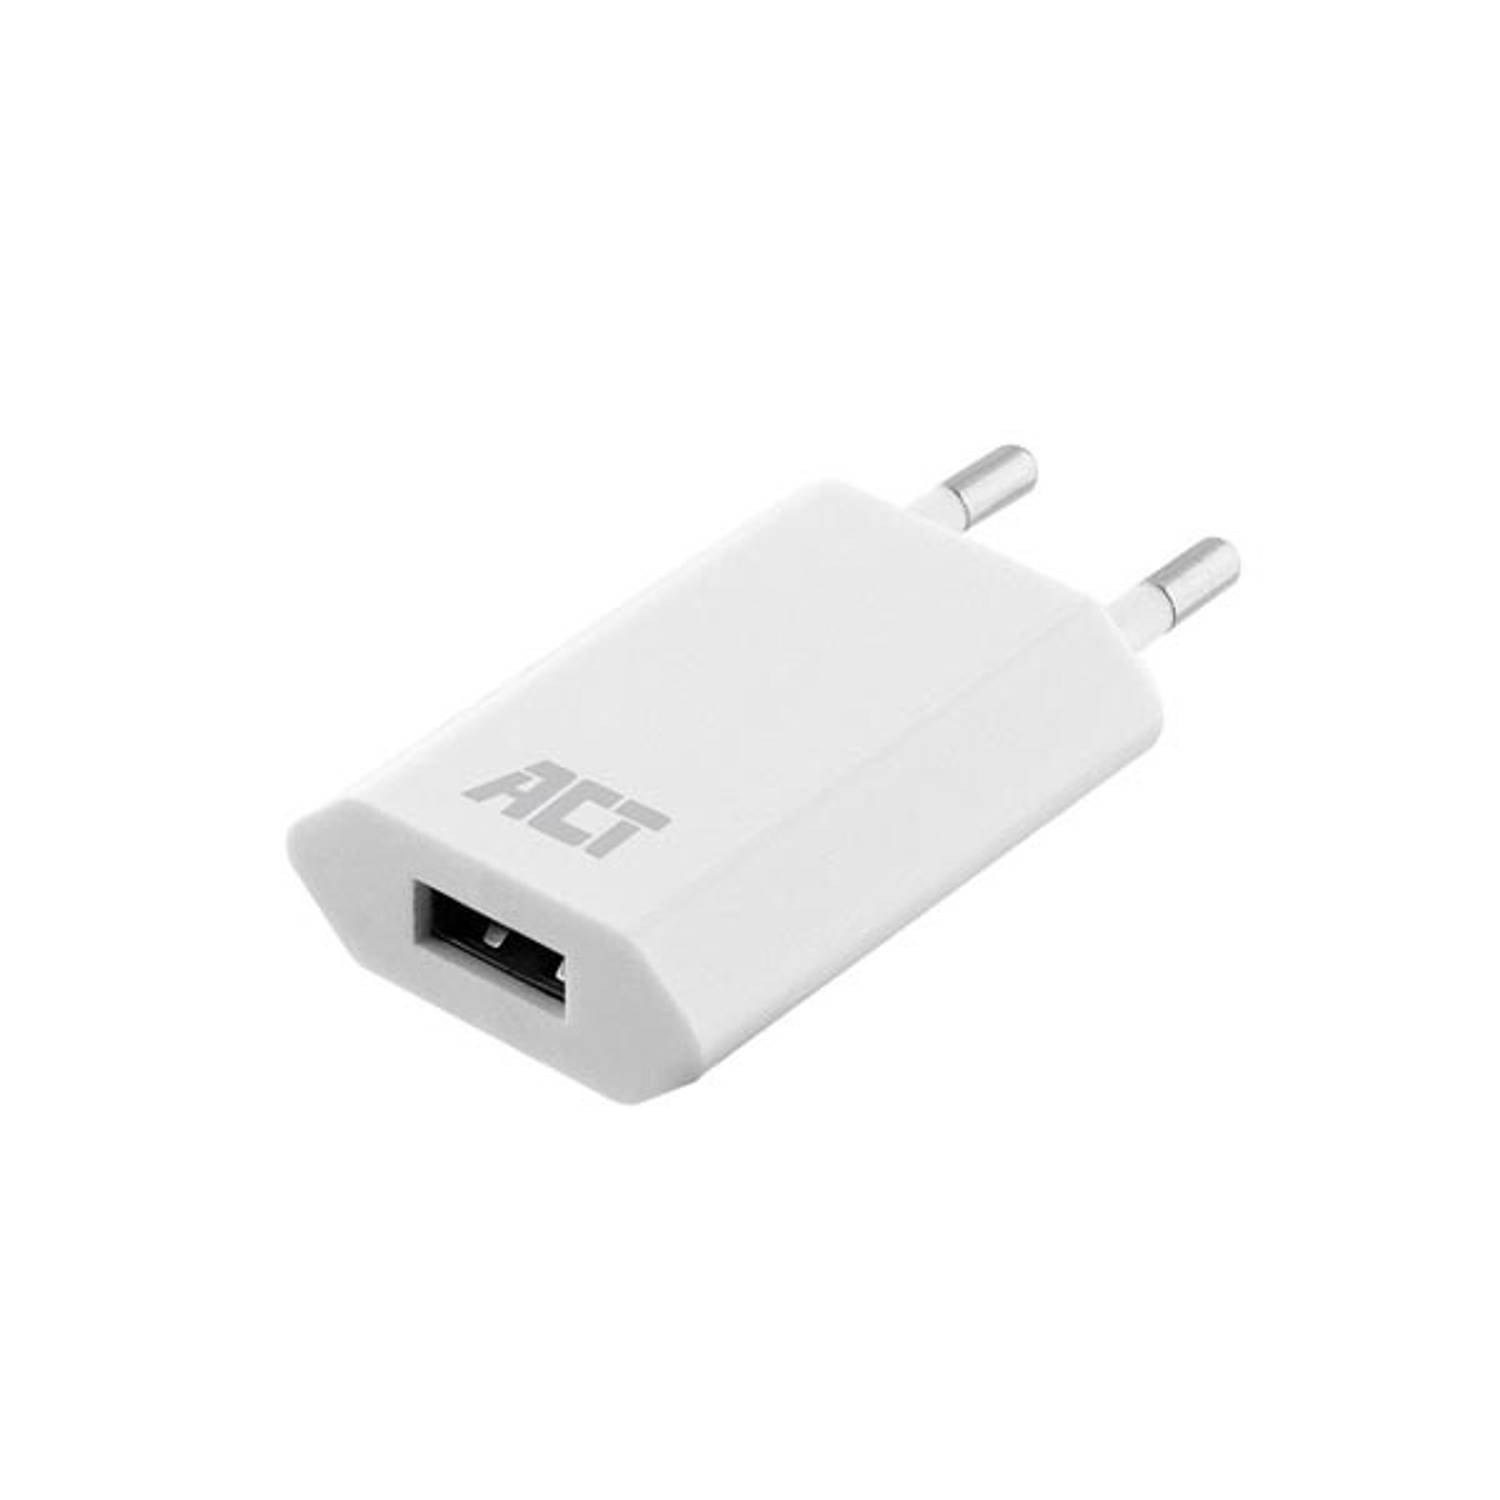 USB lader 110-240V voor smartphone 1A - wit